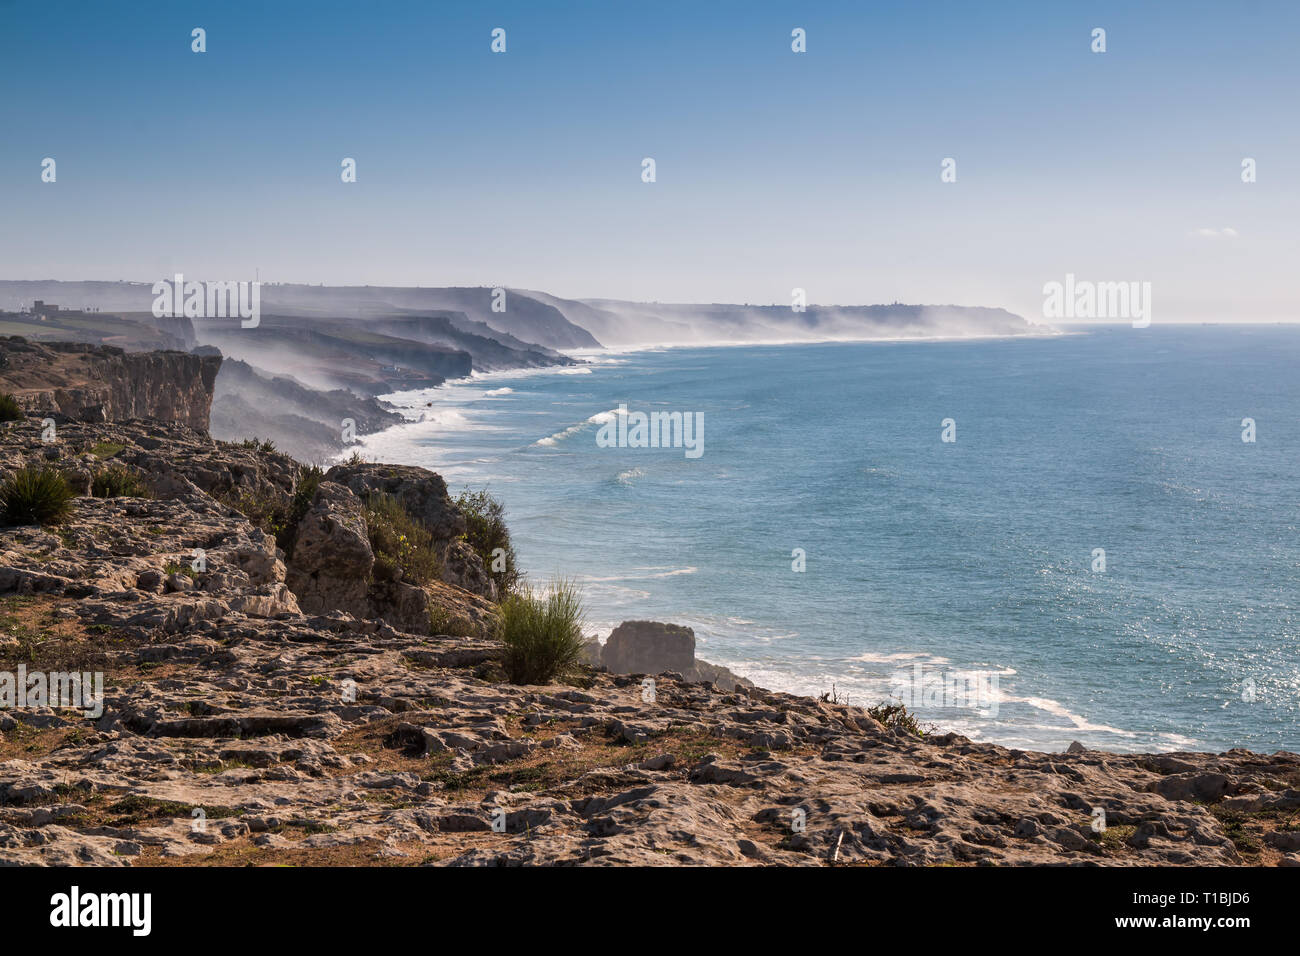 Vue du bord de la falaise de l'autre les falaises, en partie caché dans un brouillard au cours d'une marée haute. Automne bleu ciel. Horizon de l'océan Atlantique. Banque D'Images